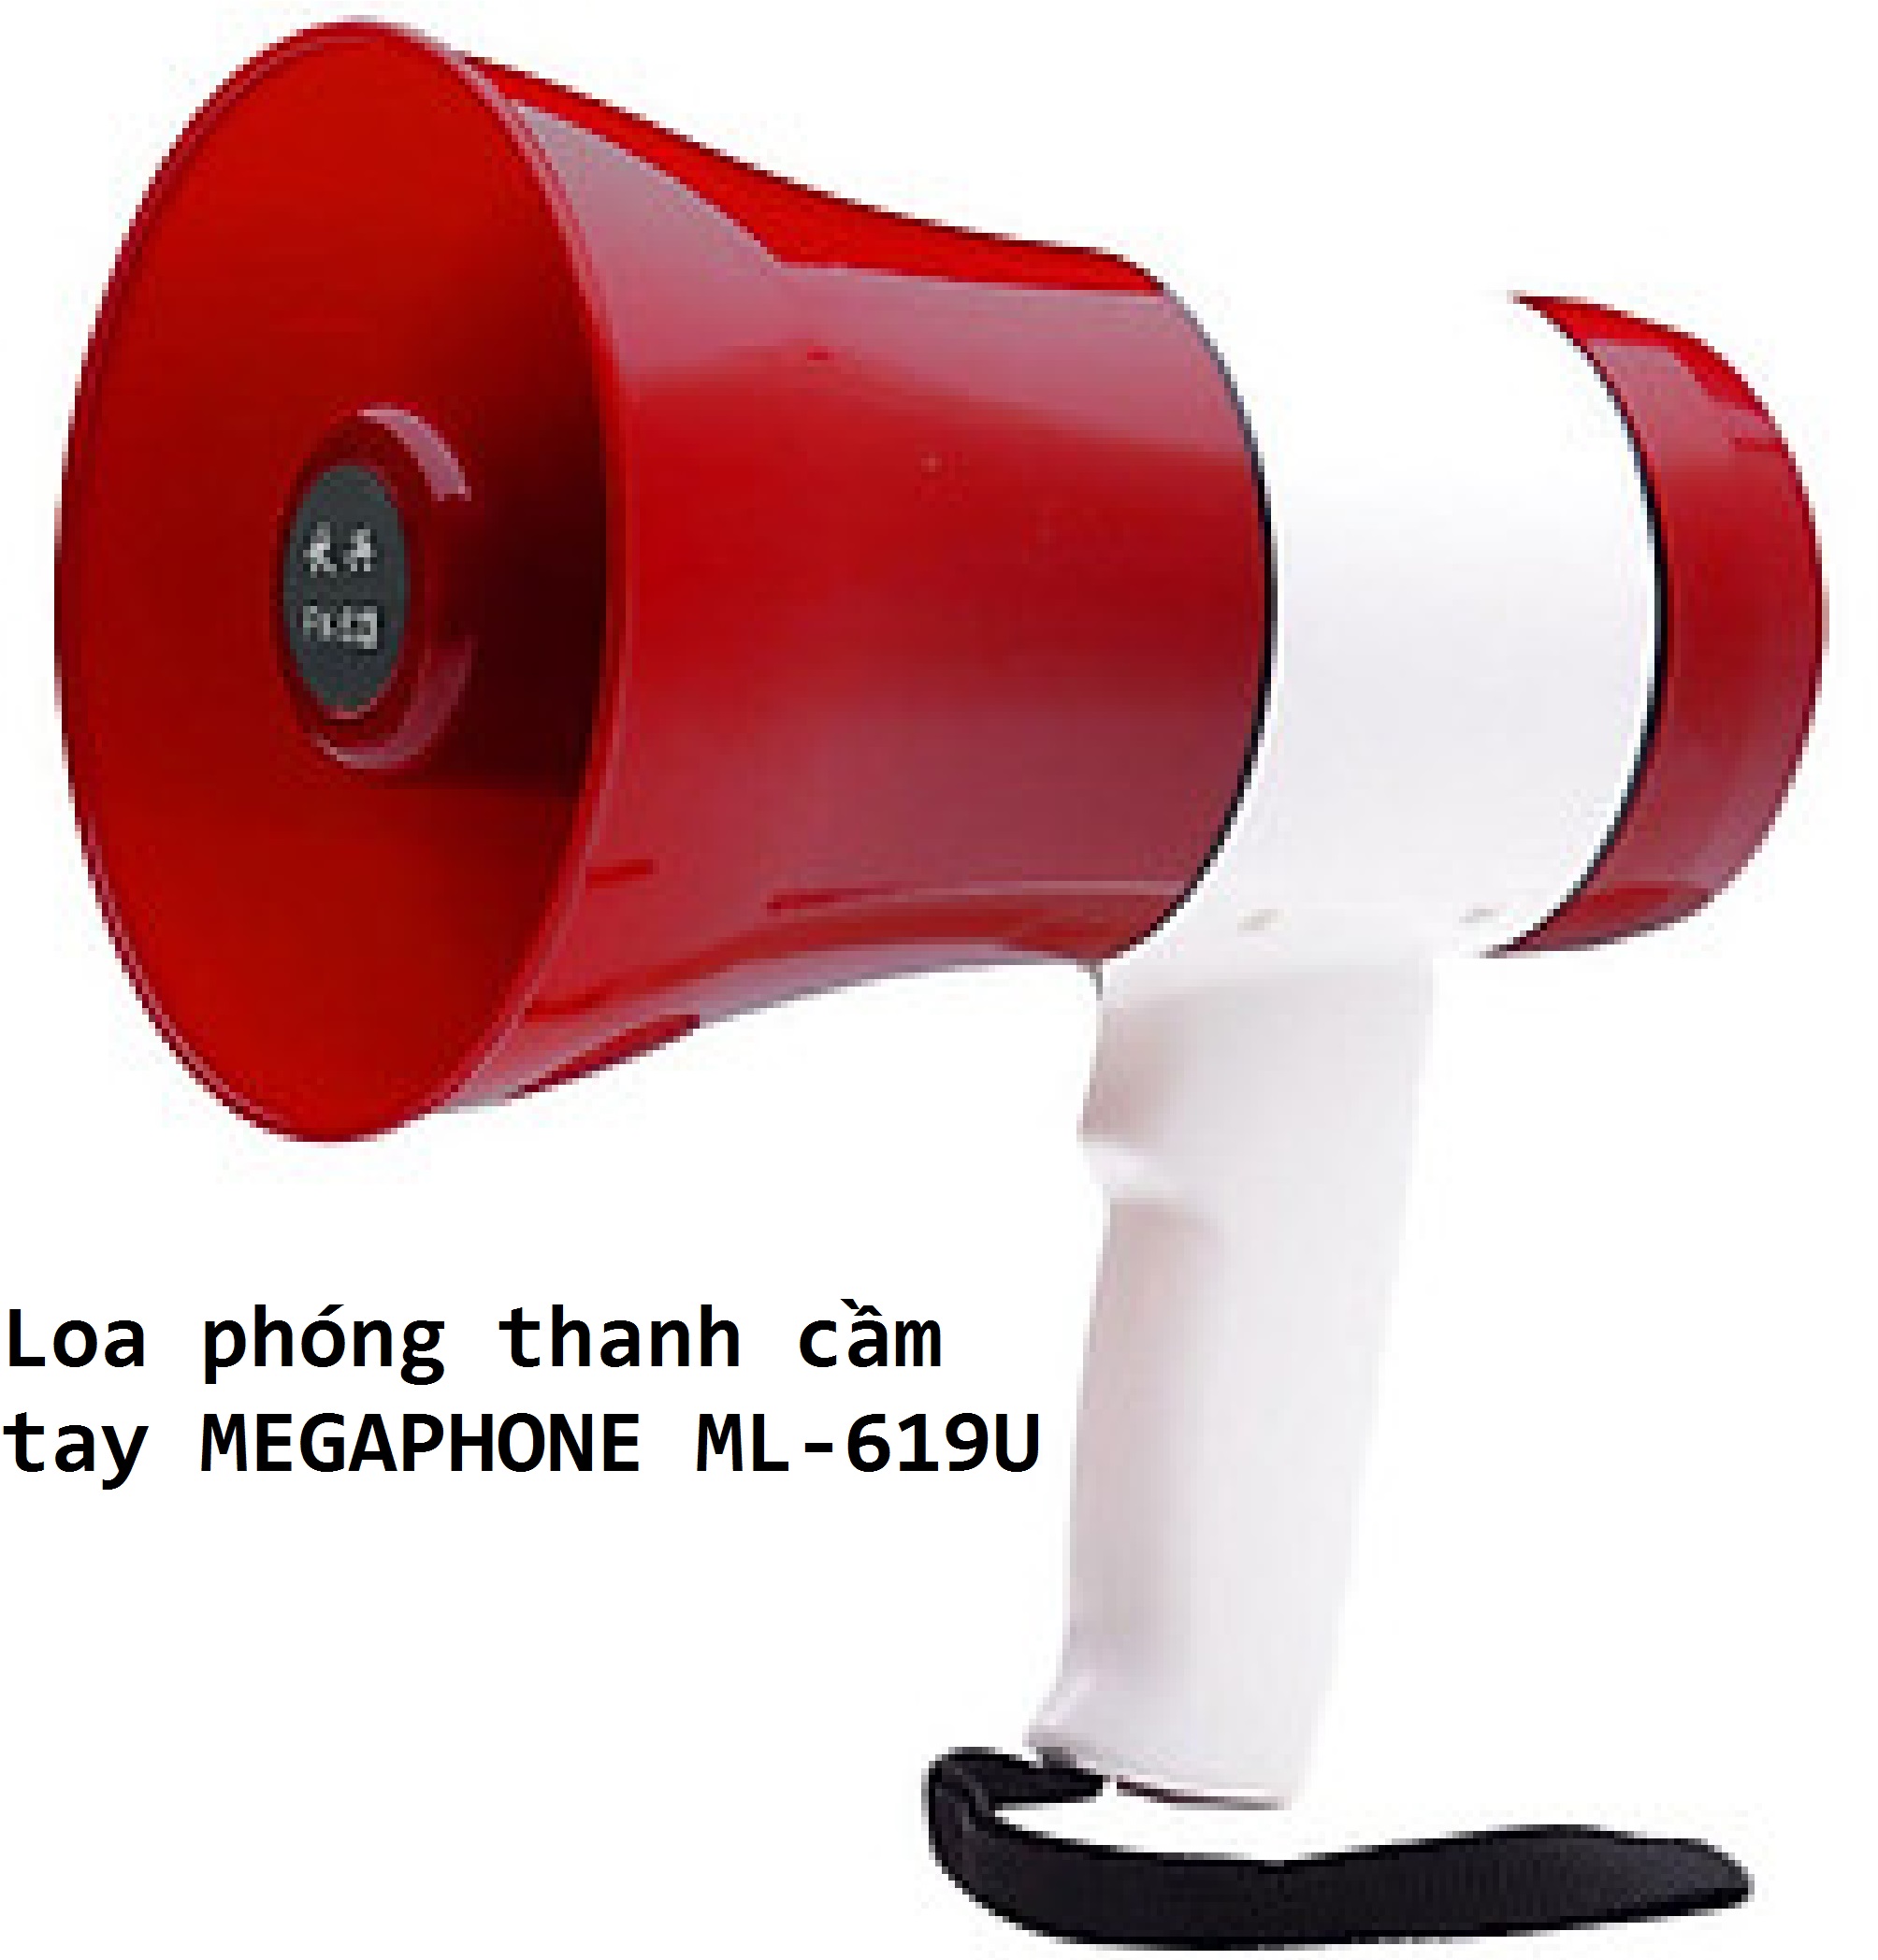 Loa phóng thanh cầm tay MEGAPHONE ML-619U - Hàng chính hãng